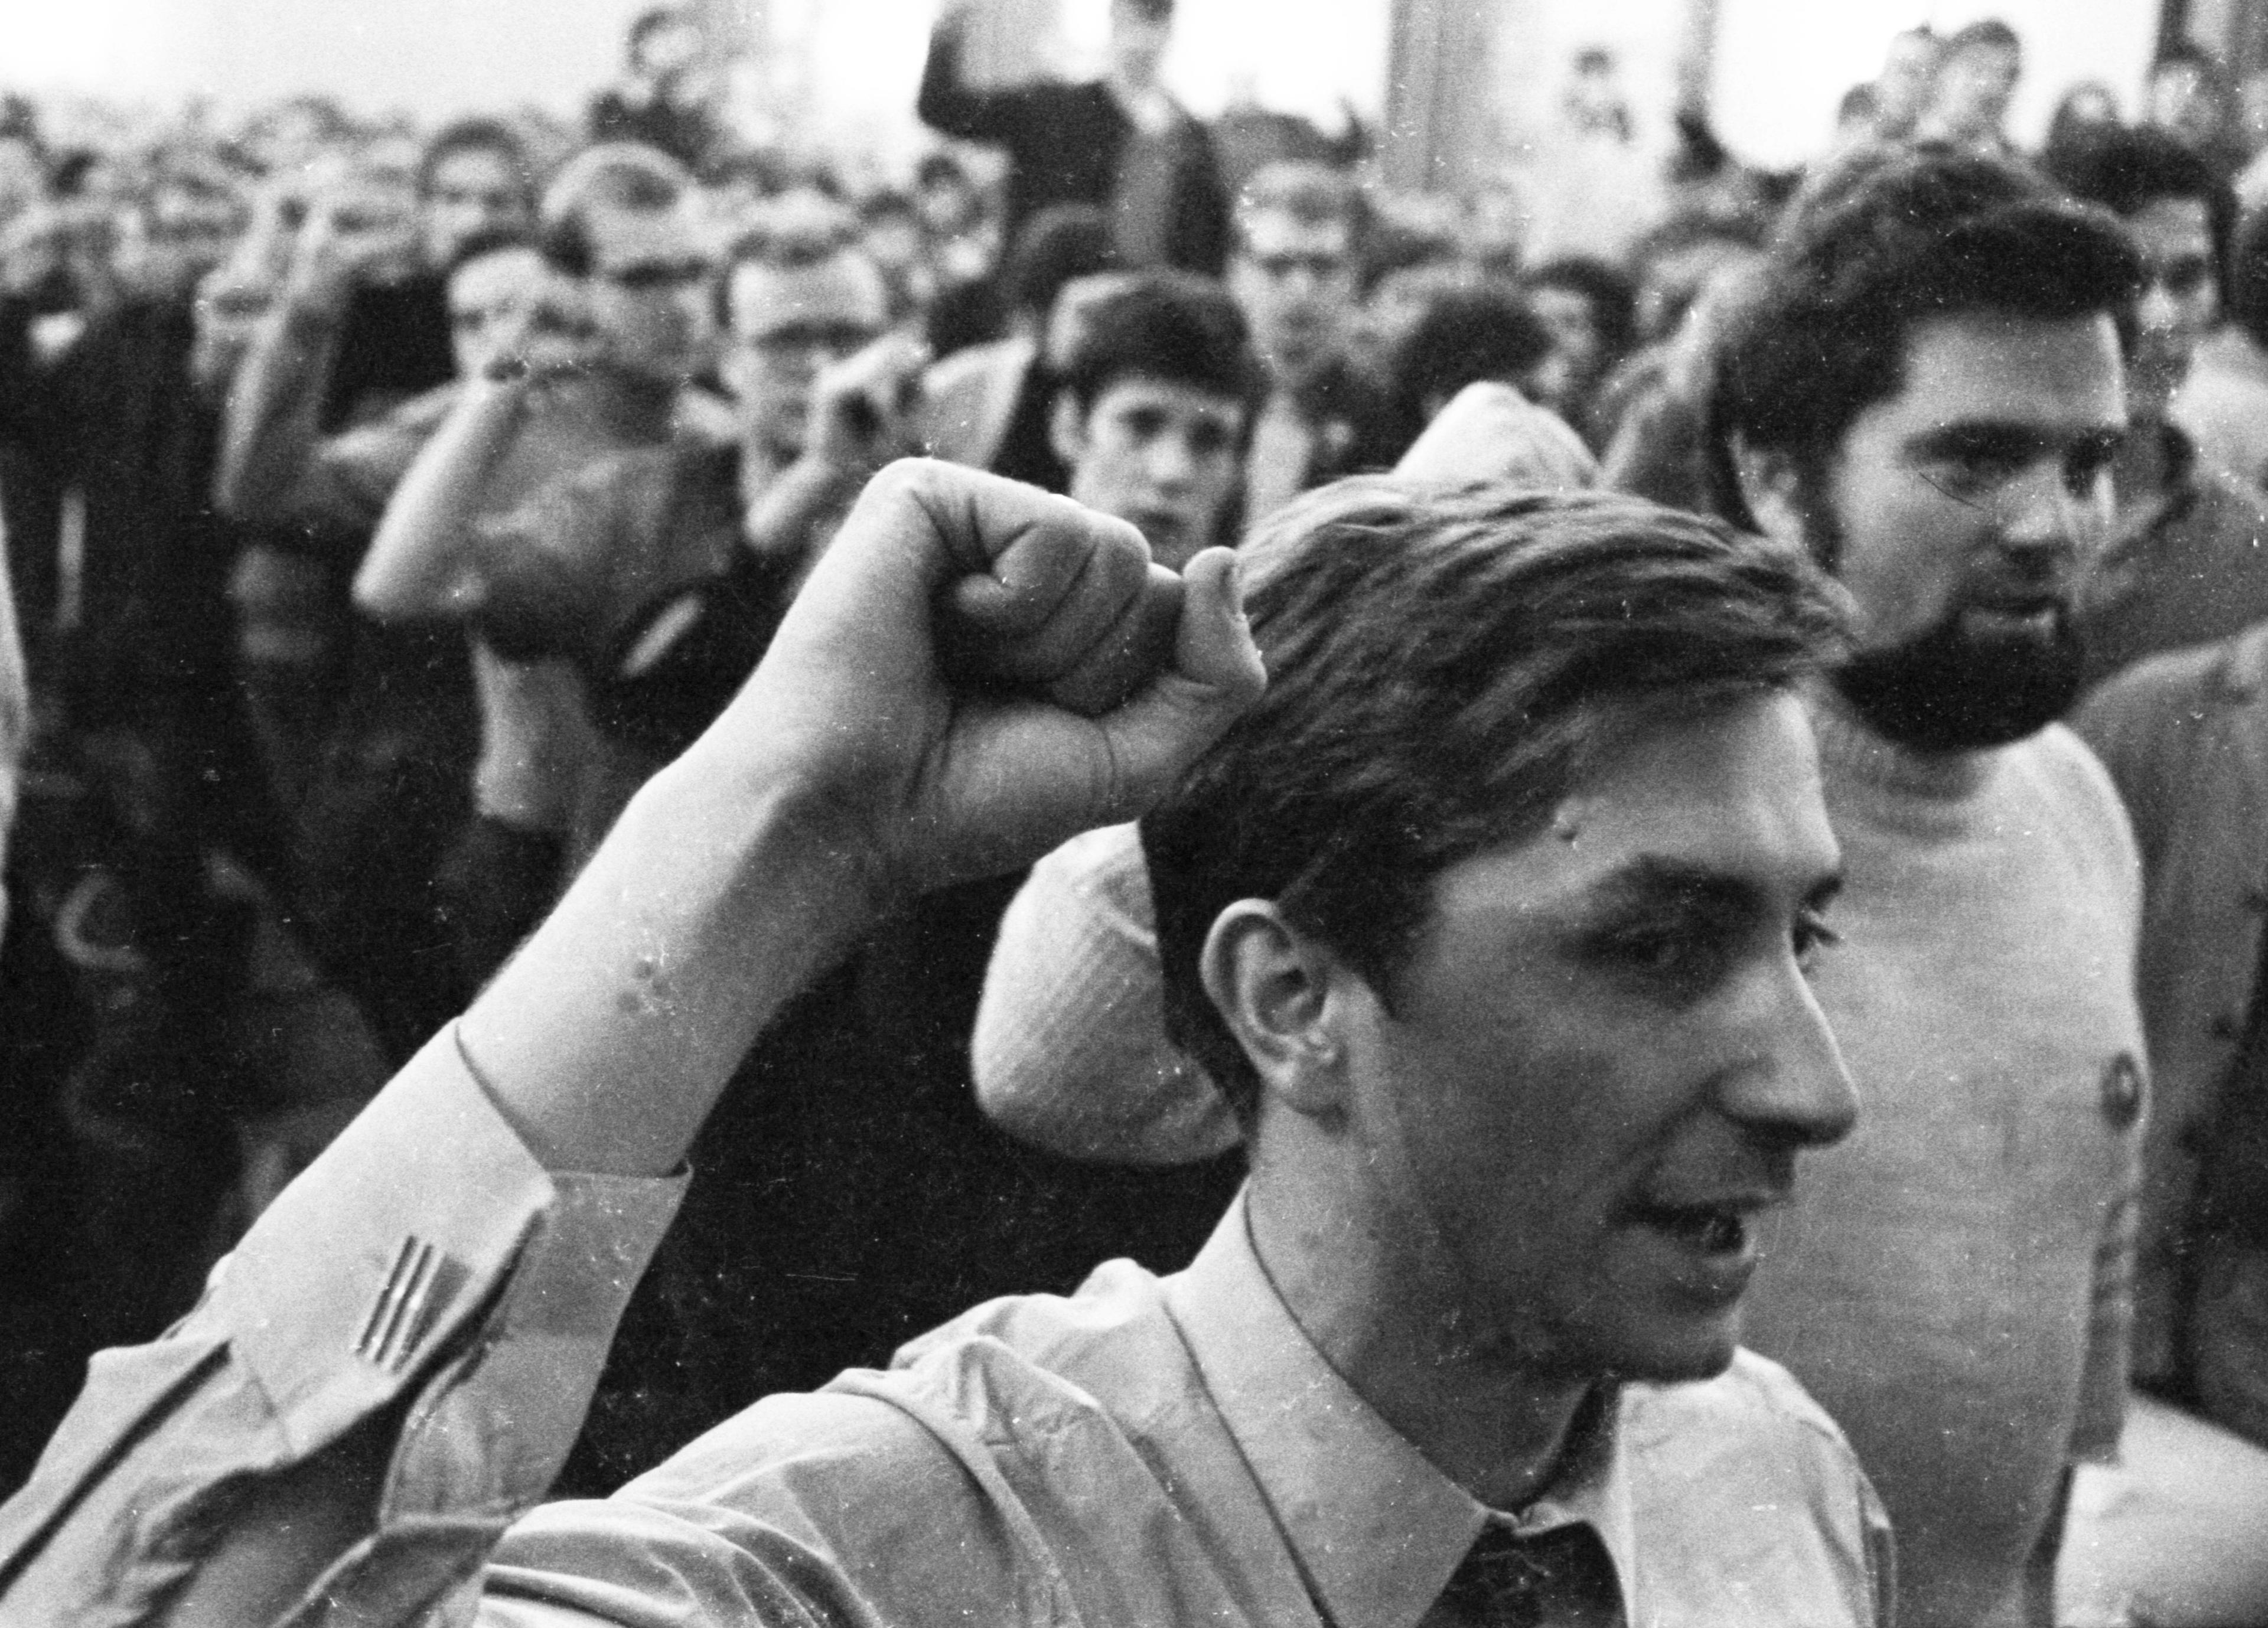 Kongress der SDAJ, dem Jugendverband der DKP, in Dortmund, 1969. Der Zusammenbruch der Sowjetunion manövrierte die Partei in eine Existenzkrise.